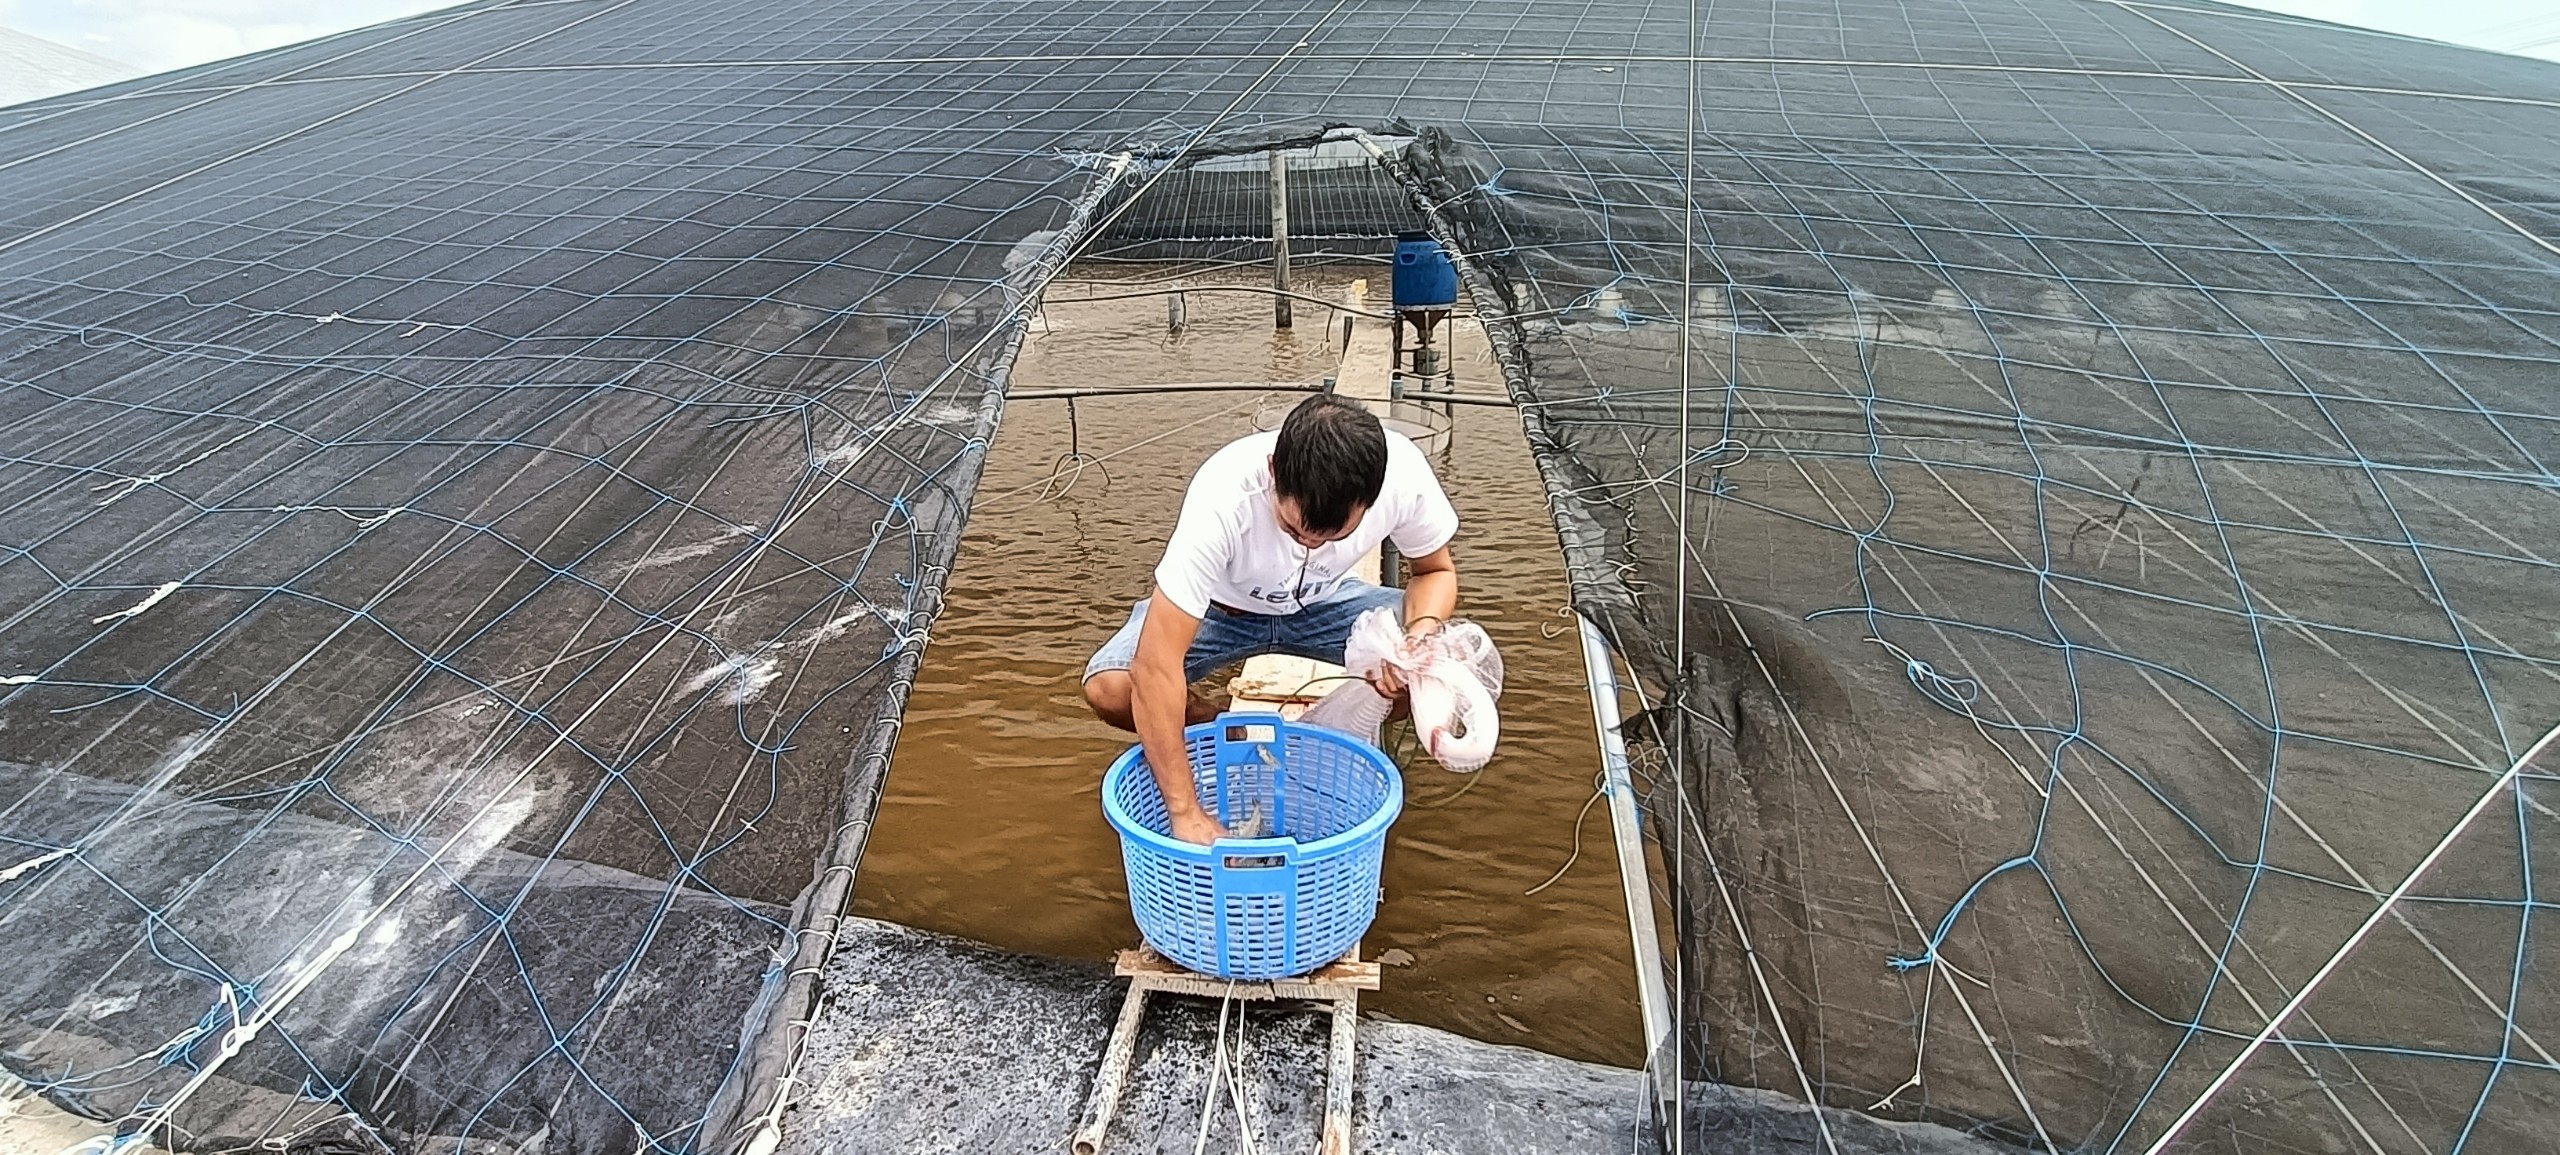  Ao nuôi tôm HTX Chợ Bến (huyện Long Điền) với hệ thống nhà màng phủ kín nhằm giảm độ nóng cũng như lượng mưa, giúp tôm không bị sốc nhiệt độ khi chuyển mùa.